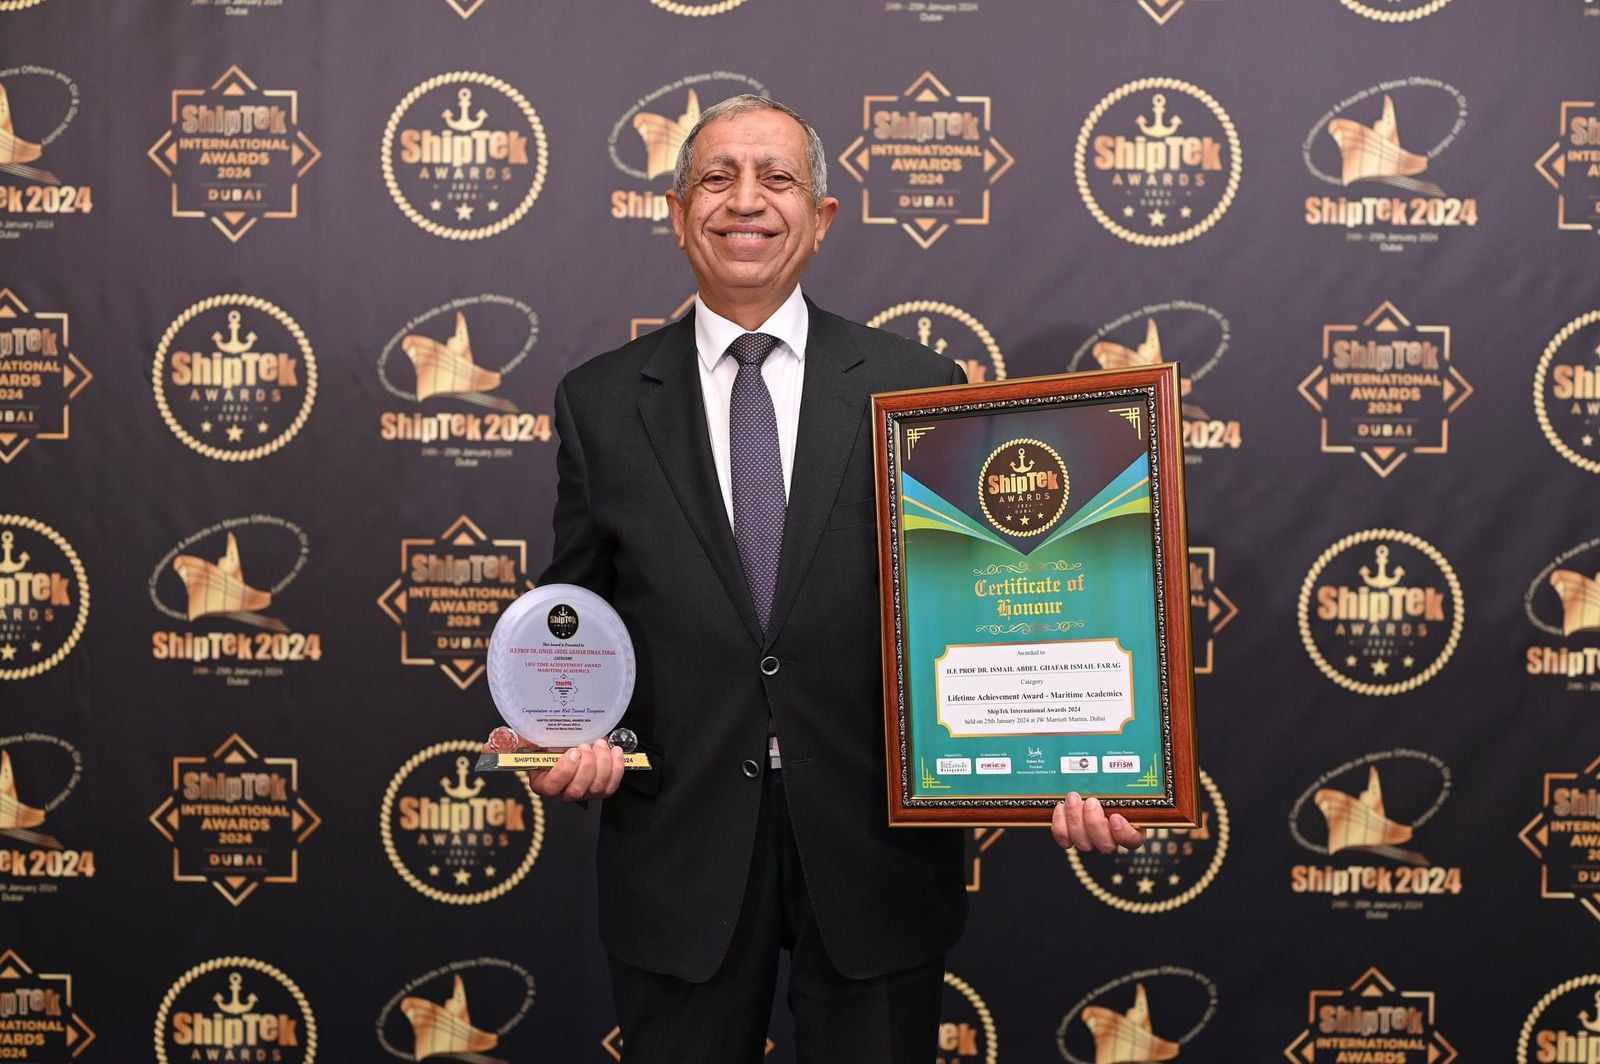 إسماعيل عبد الغفار يحصد جائزة "𝐋𝐢𝐟𝐞 𝐓𝐢𝐦𝐞 𝐀𝐜𝐡𝐢𝐞𝐯𝐞𝐦𝐞𝐧𝐭 𝐀𝐰𝐚𝐫𝐝 - 𝐌𝐚𝐫𝐢𝐭𝐢𝐦𝐞 𝐀𝐜𝐚𝐝𝐞𝐦𝐢𝐜𝐬" لعام 2024